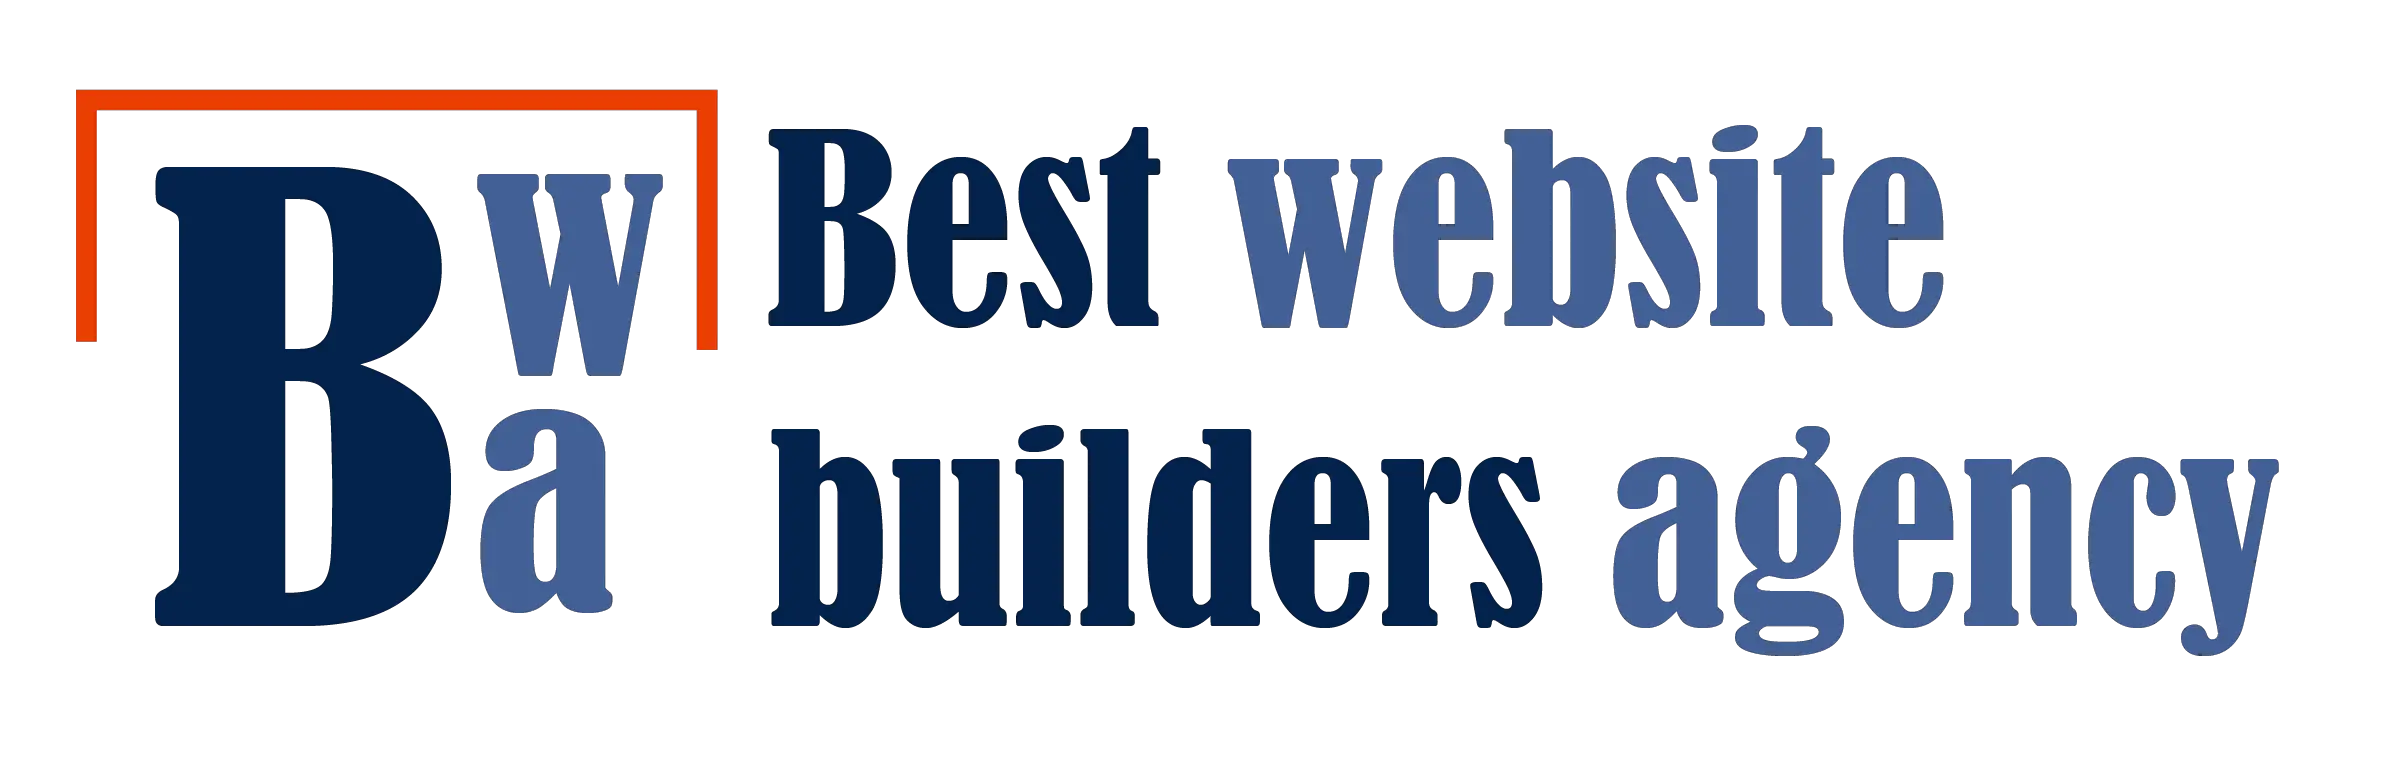 Best Website Builders Company